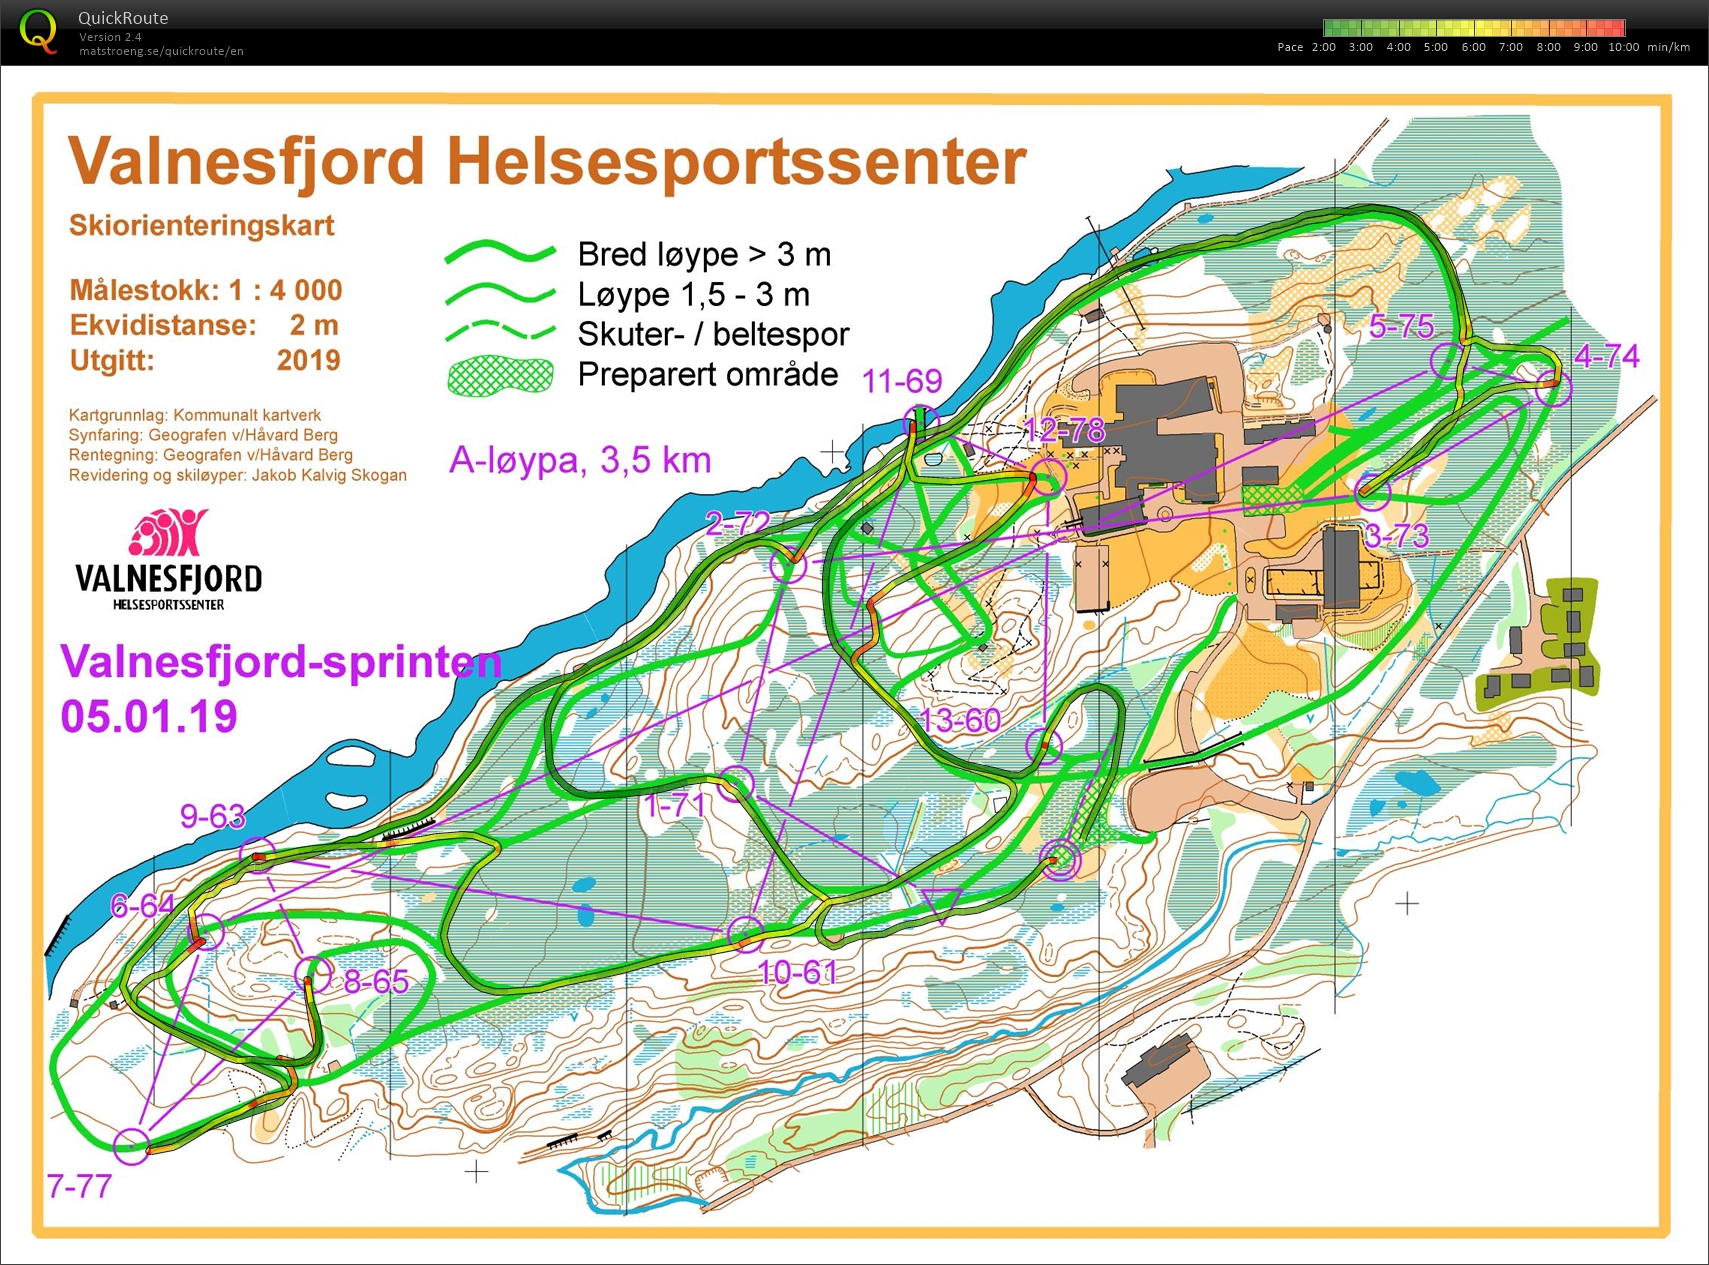 Valnesfjordsprinten Skiorientering (05-01-2020)